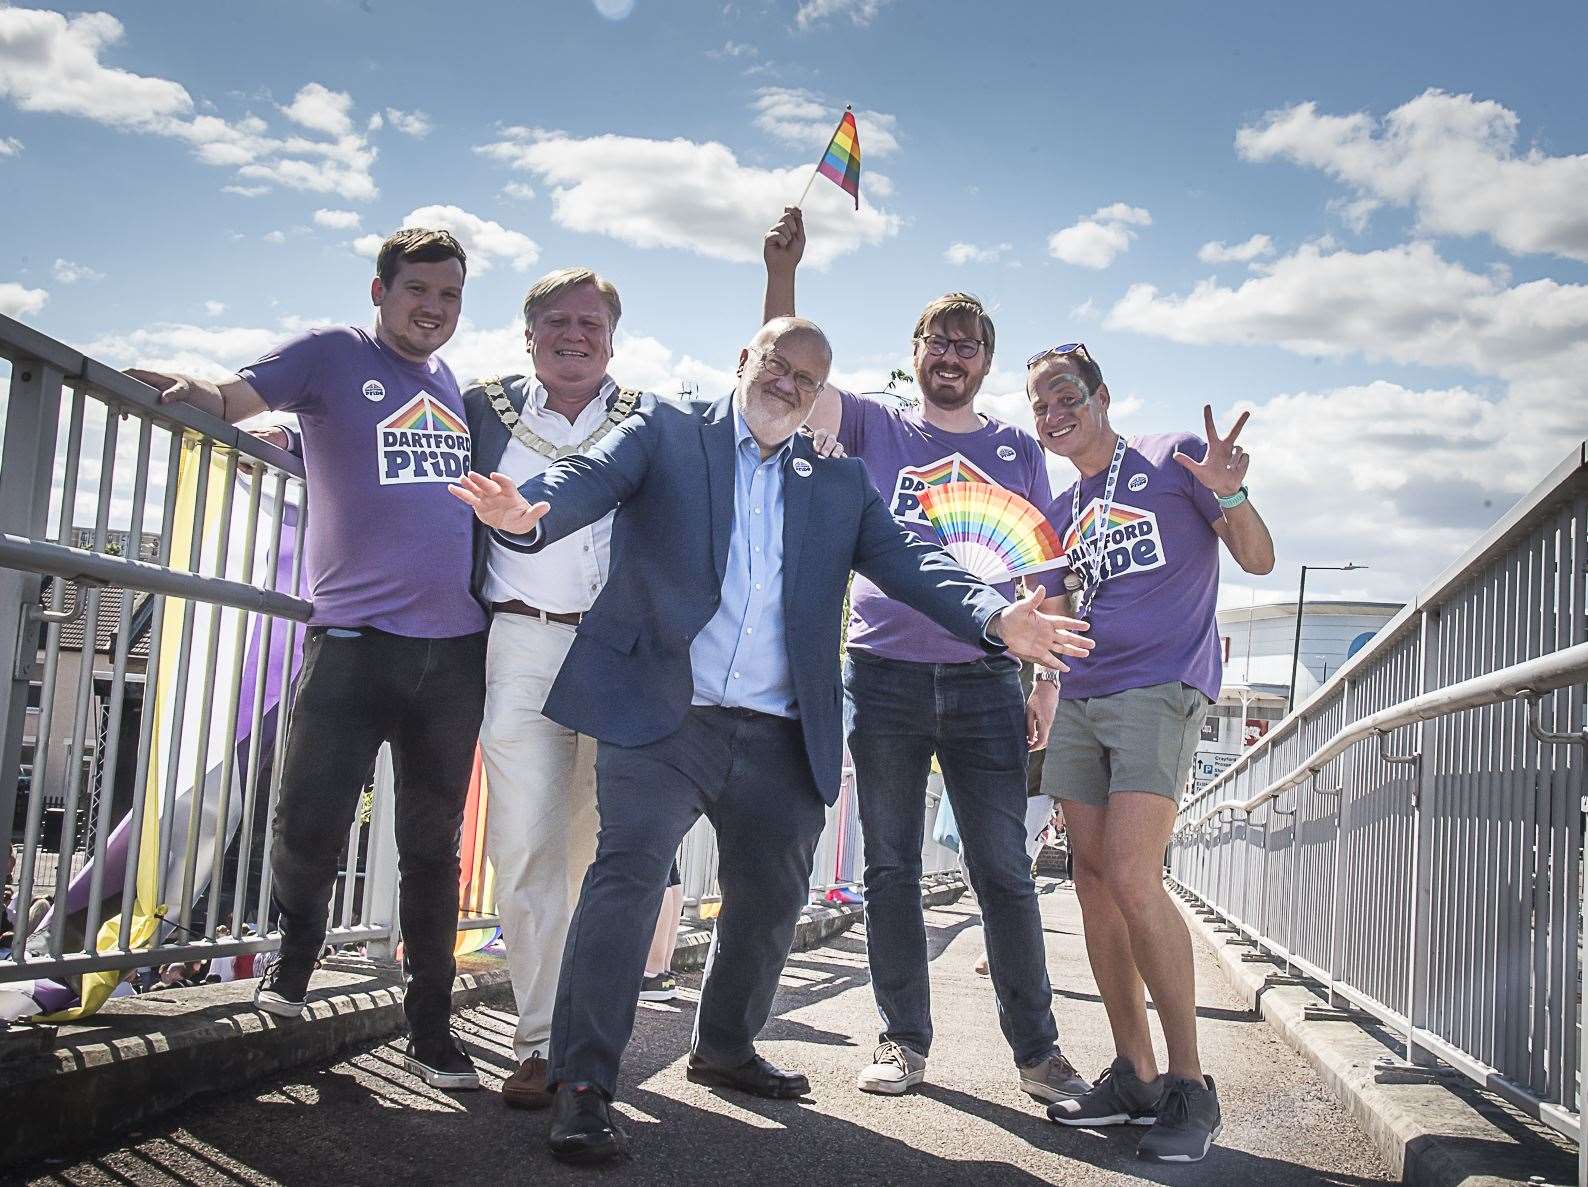 Cllr Jeremy Kite and the team for Dartford Pride